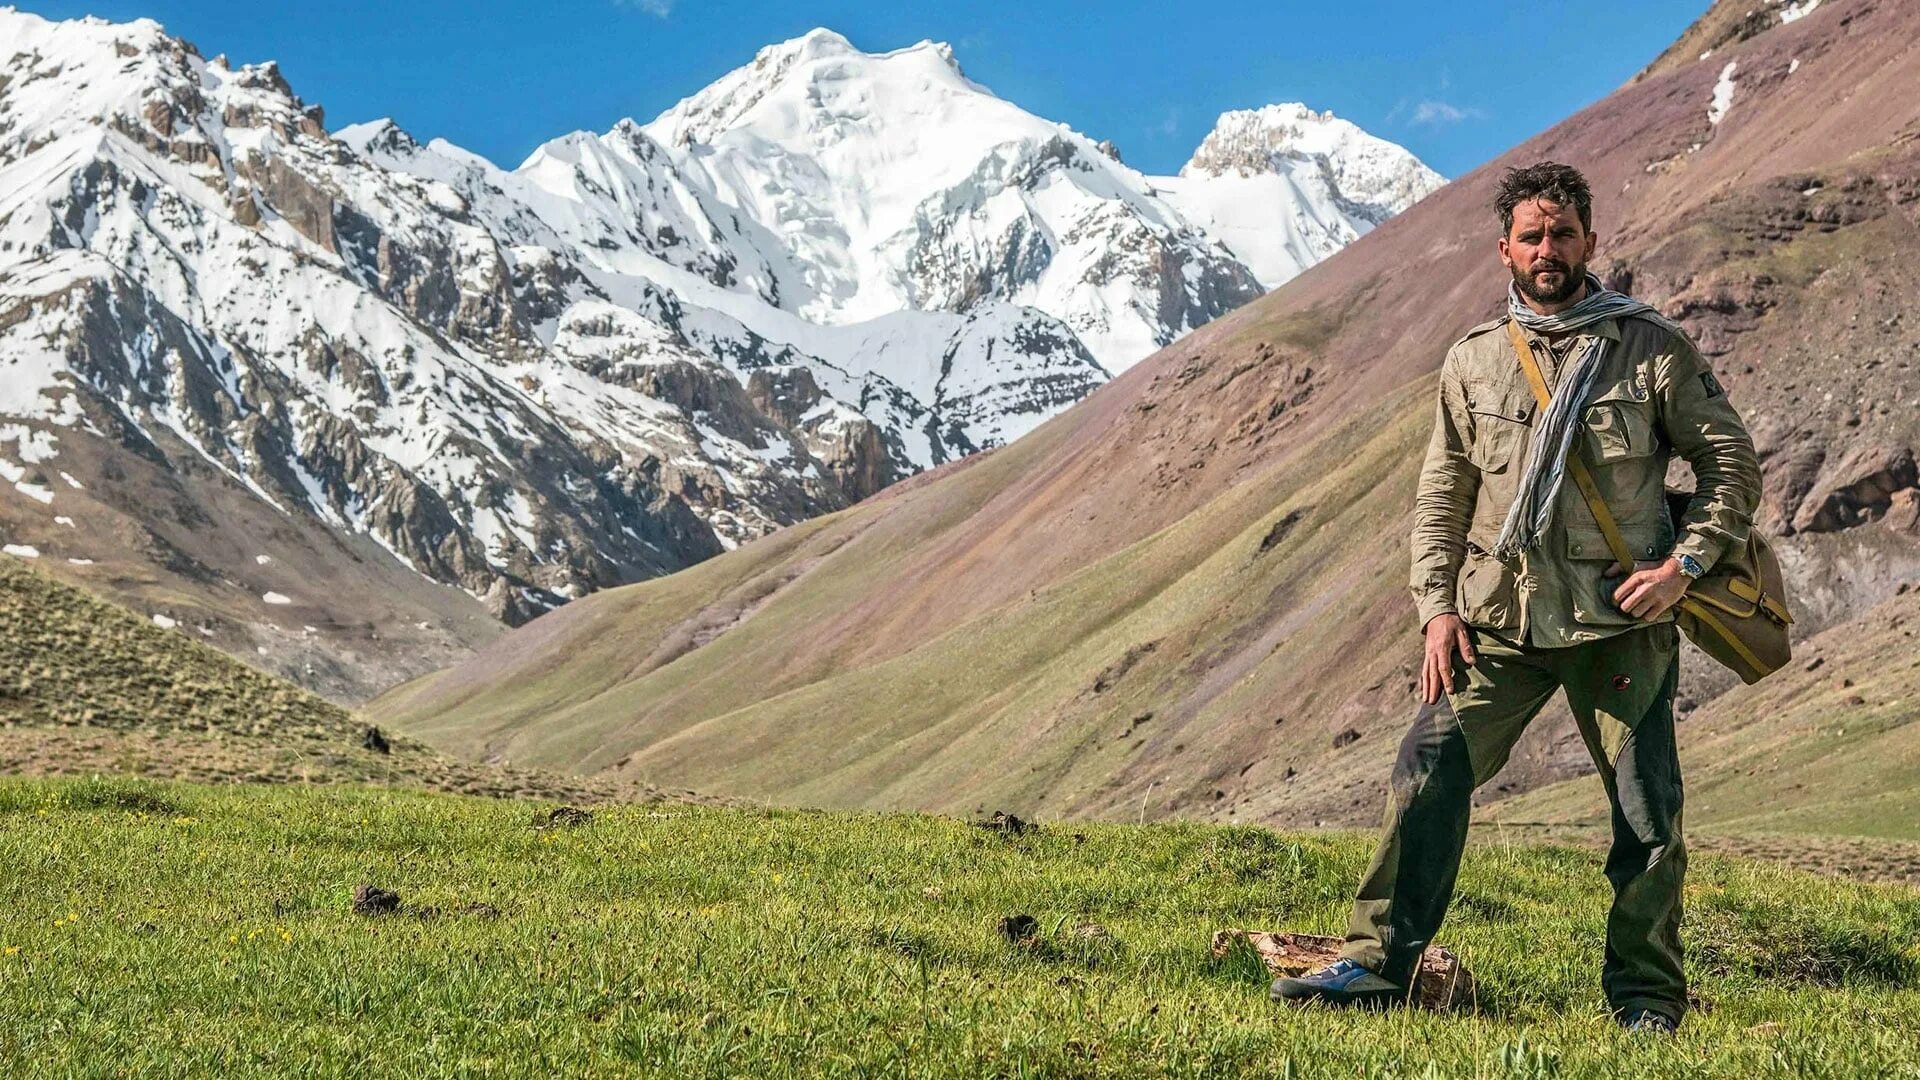 High mountains текст. Левинсон Вуд путешественник. Гималаи Афганистан. Himalaya.2015.